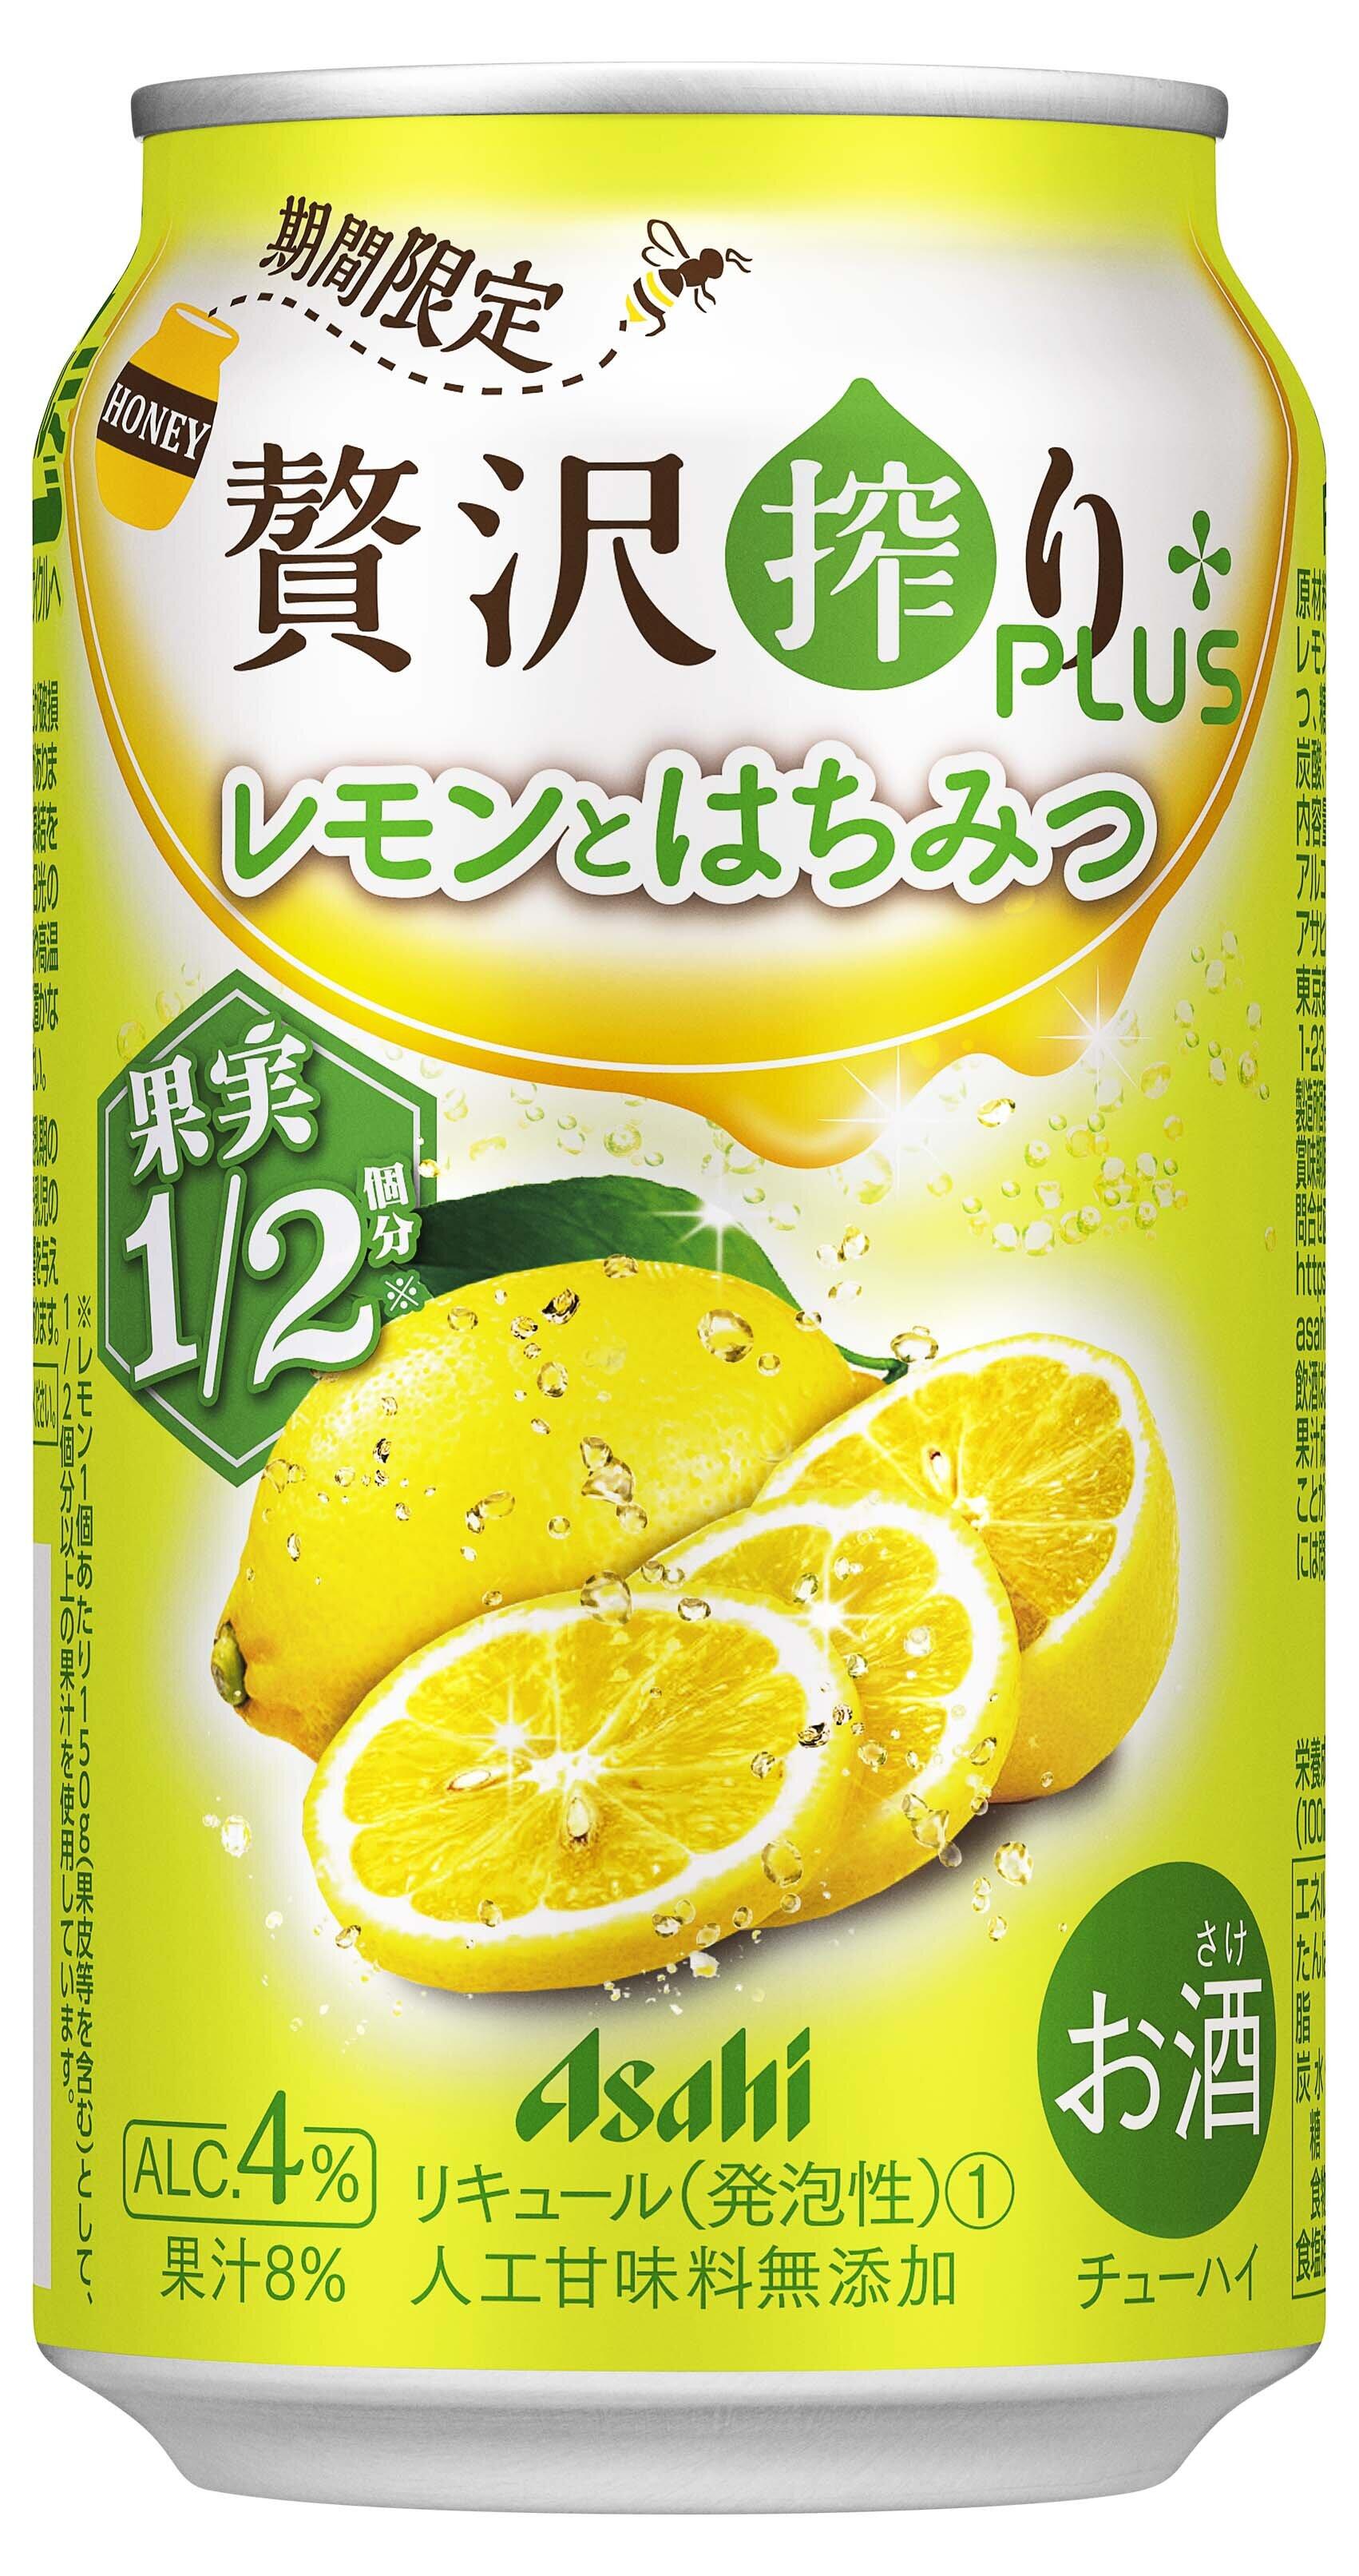 夏らしい甘酸っぱさ　「アサヒ贅沢搾りプラス」第2弾は「レモンとはちみつ」